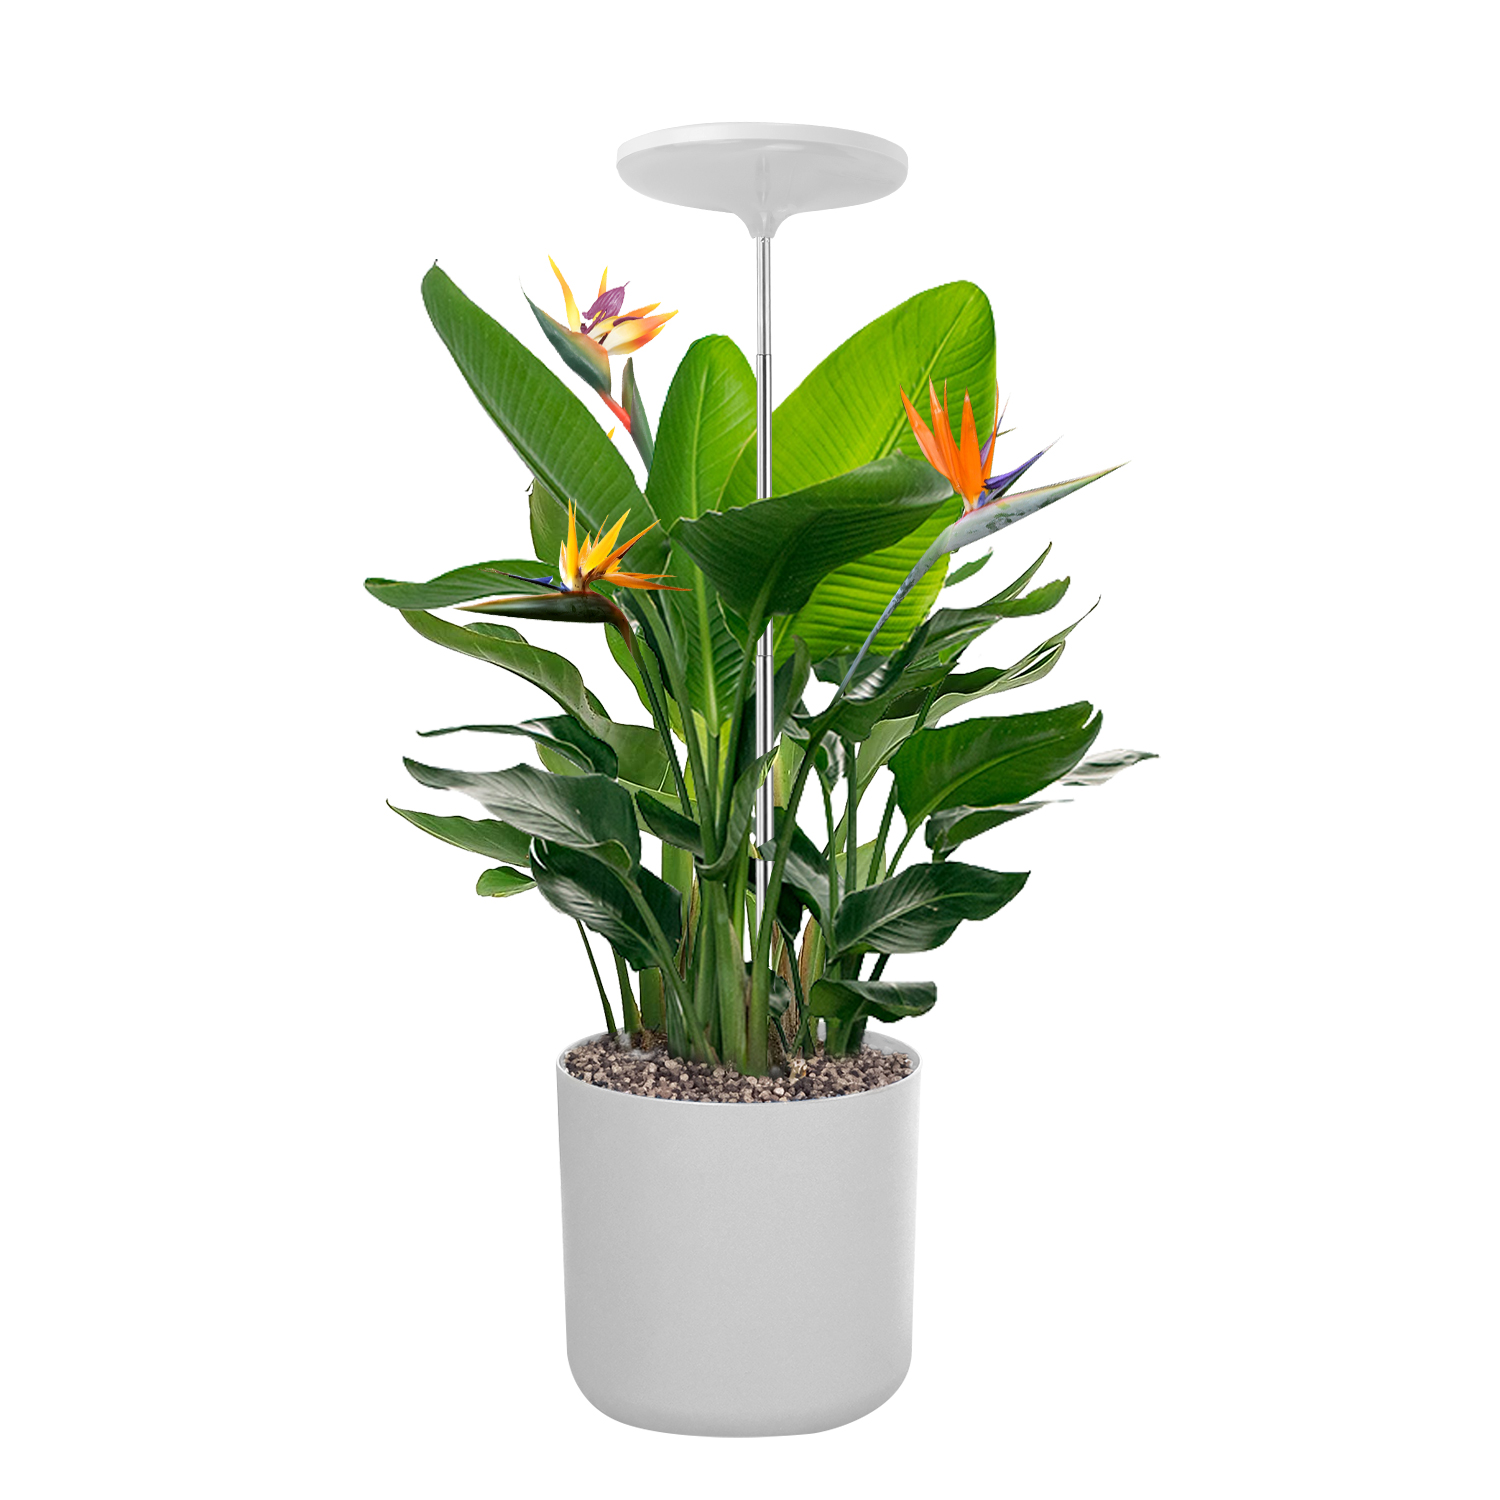 TG004 Endoma Smart Plant Grow Light Lampo Ĝardeno Grow Lights Ornamaj Planto Lumoj